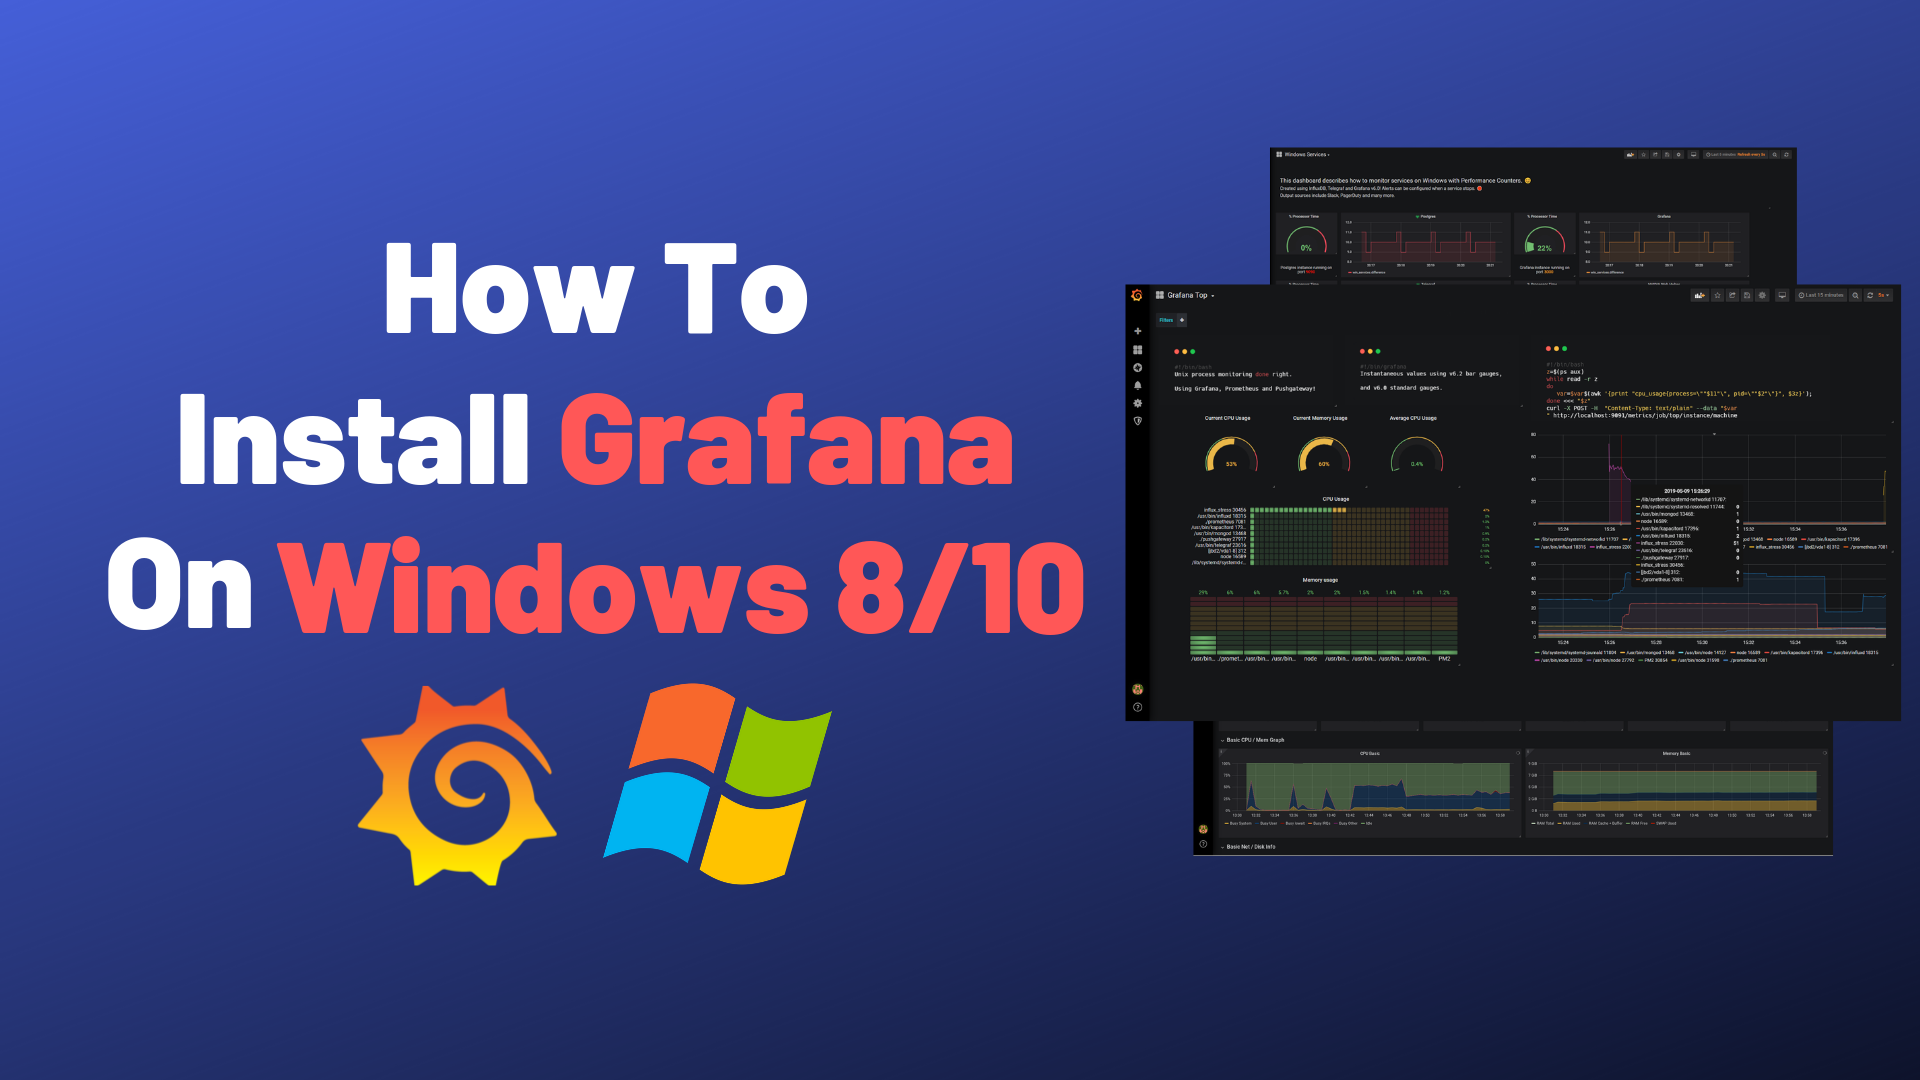 How To Install Grafana on Windows 8/10